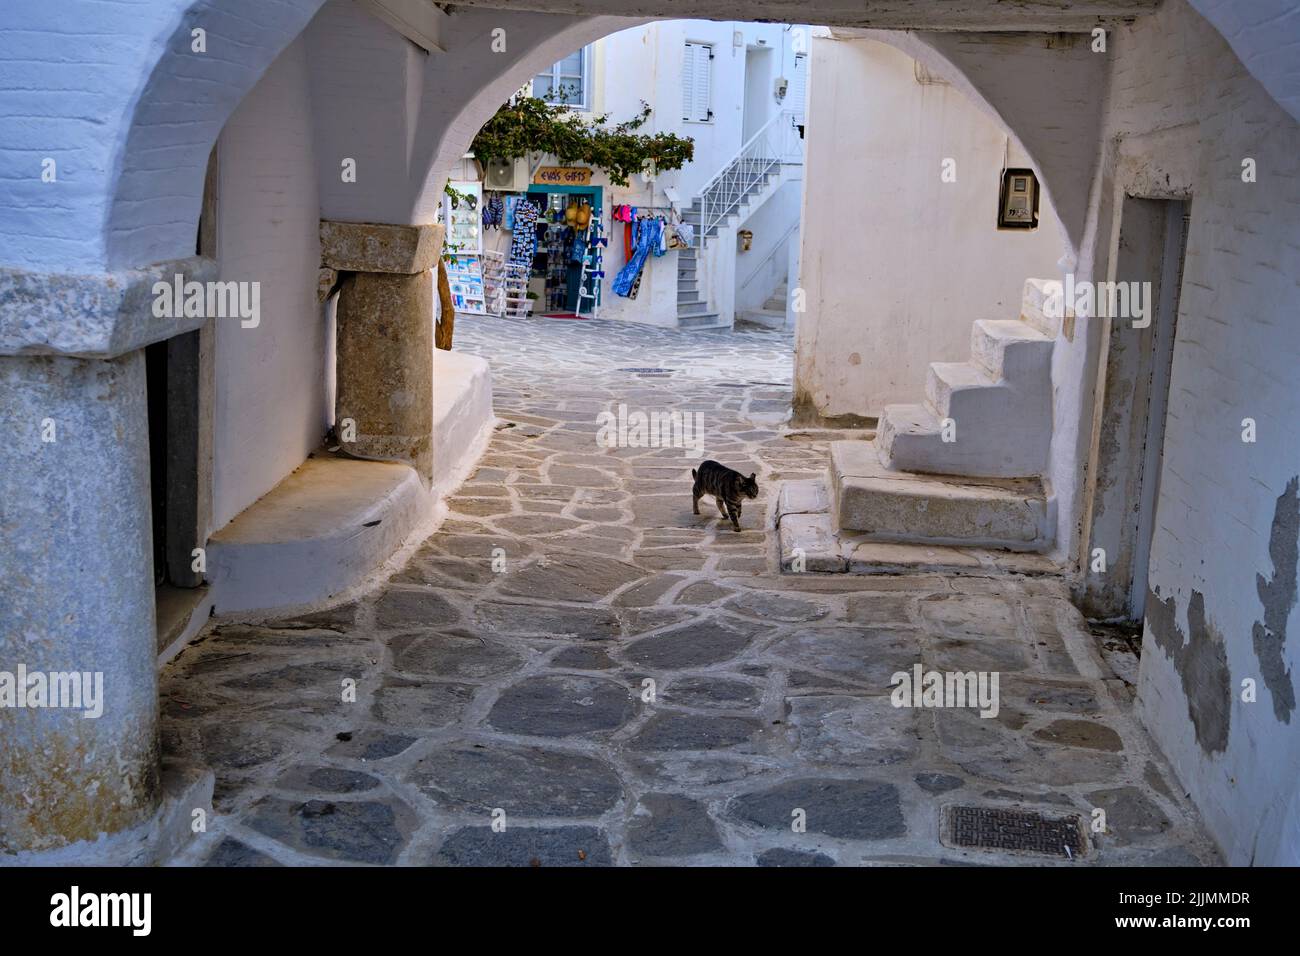 Grèce, Cyclades, île de Paros, Parikia (Hora), chat dans les ruelles Banque D'Images